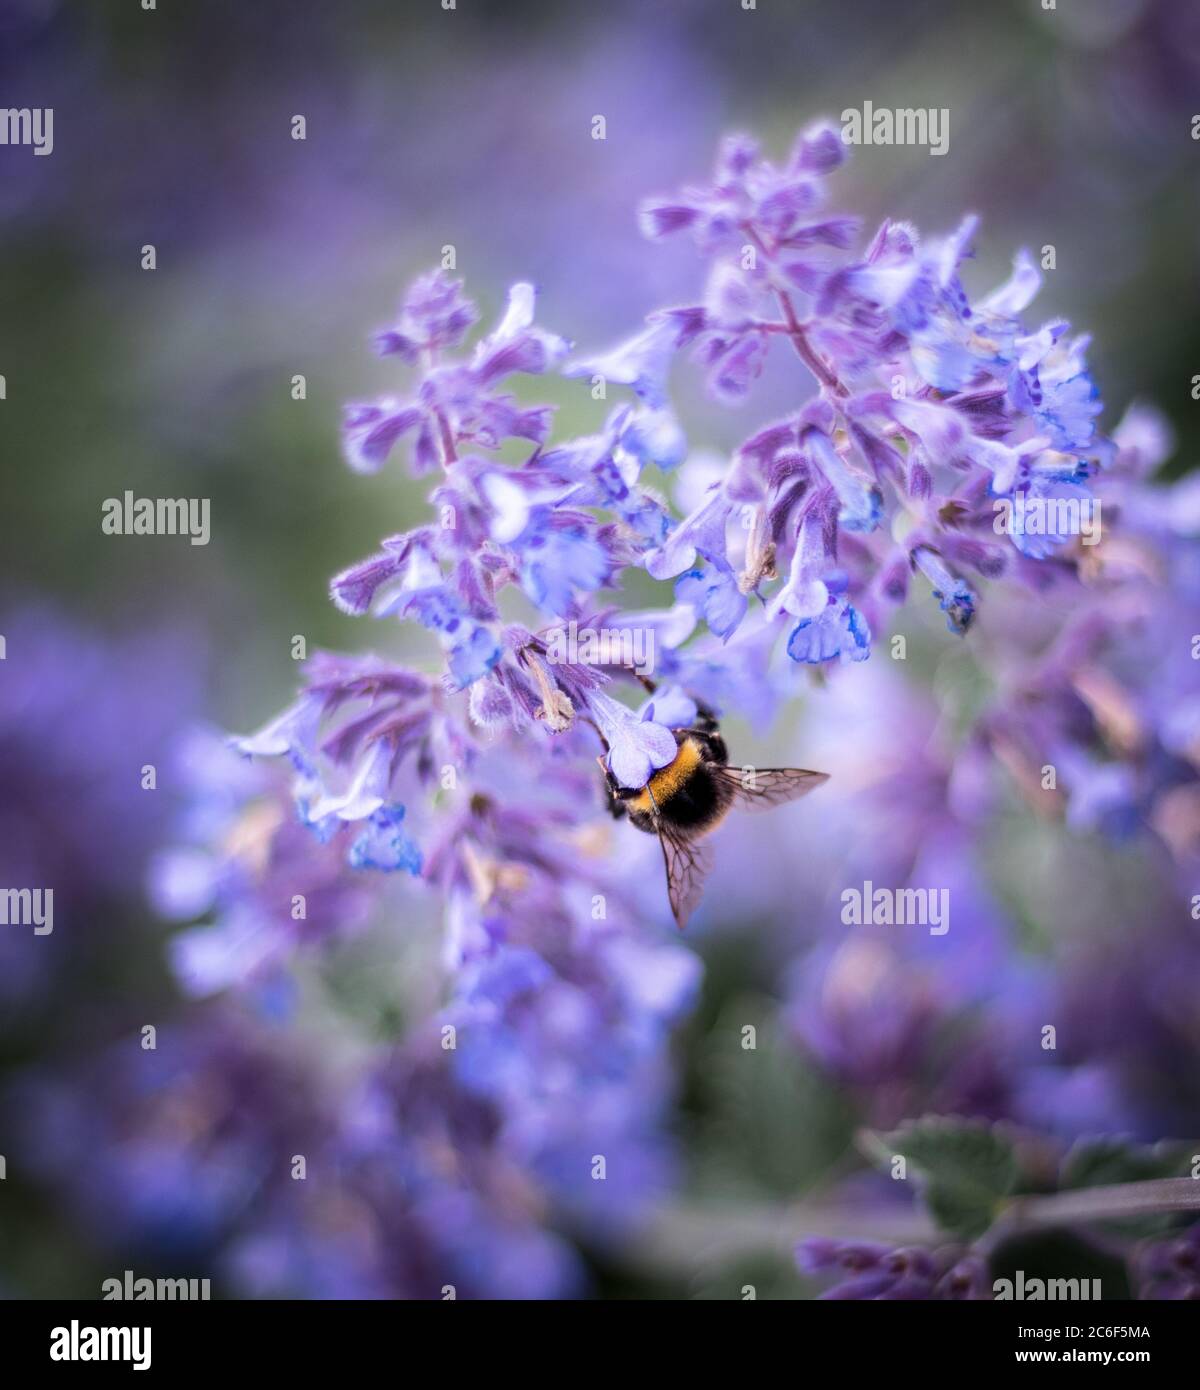 Bumblebee on Flower/ Hummel beim Nektar trinken an einer lilanen Pflanze Stock Photo